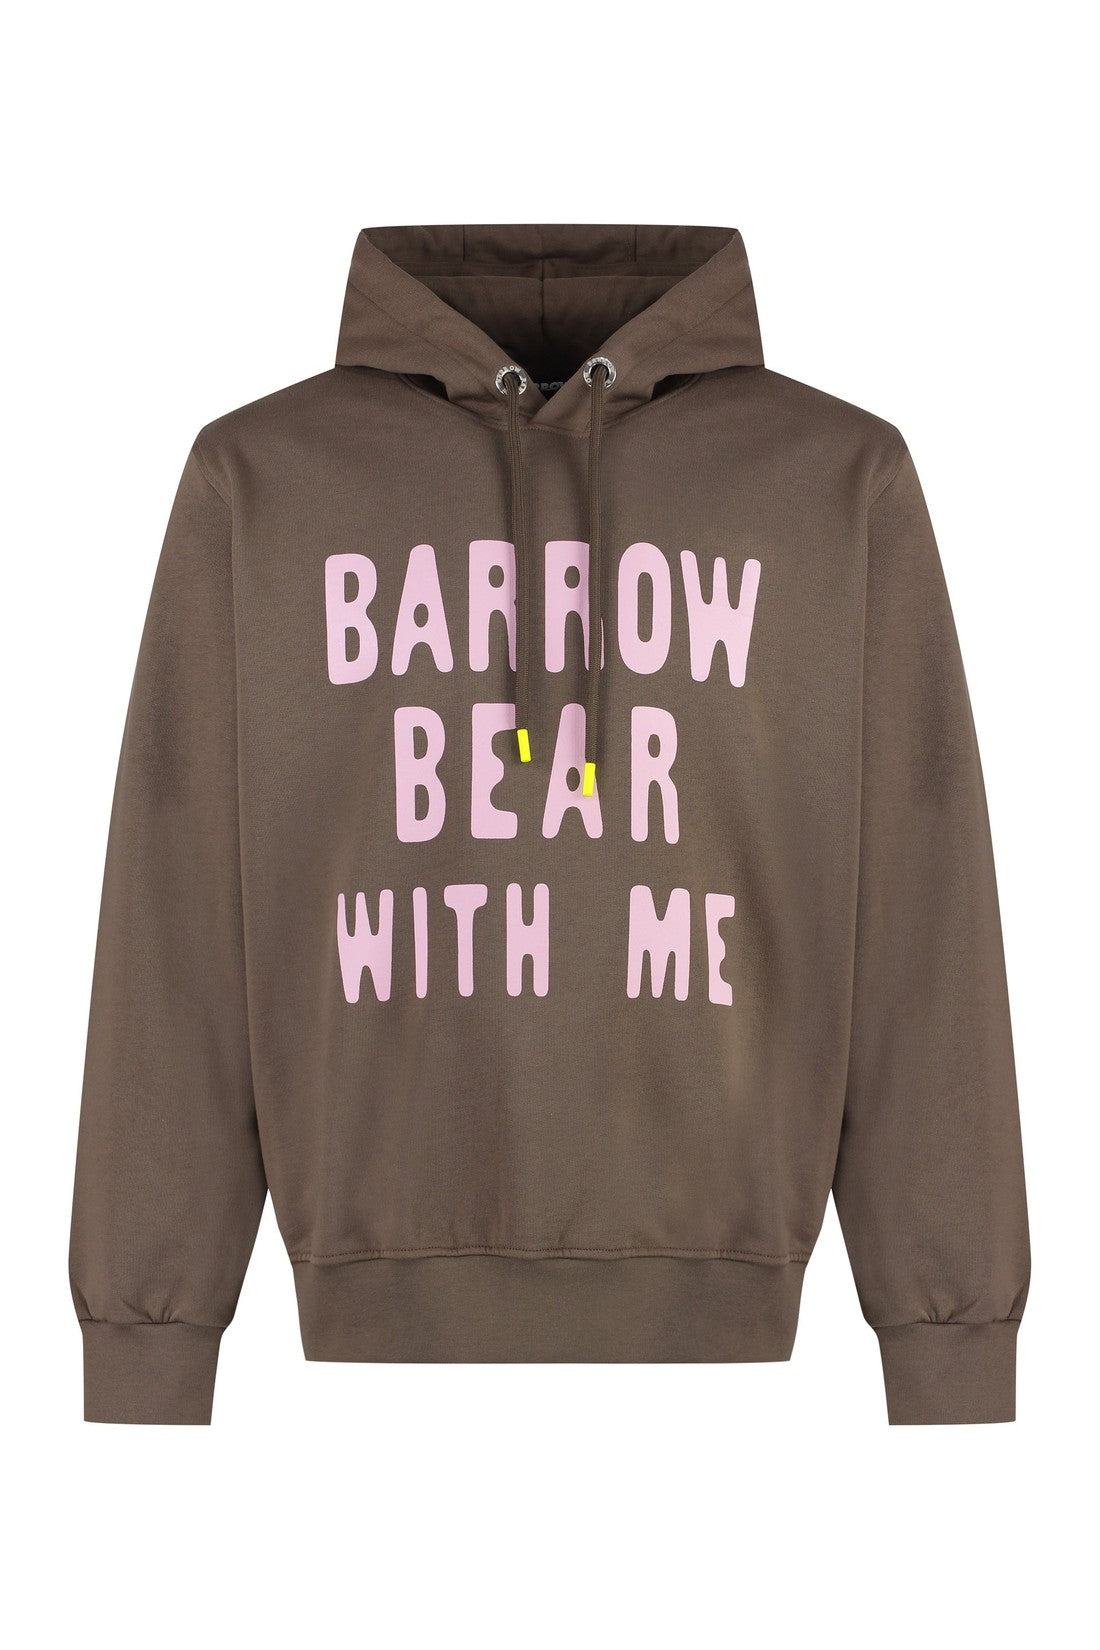 Barrow-OUTLET-SALE-Cotton hoodie-ARCHIVIST